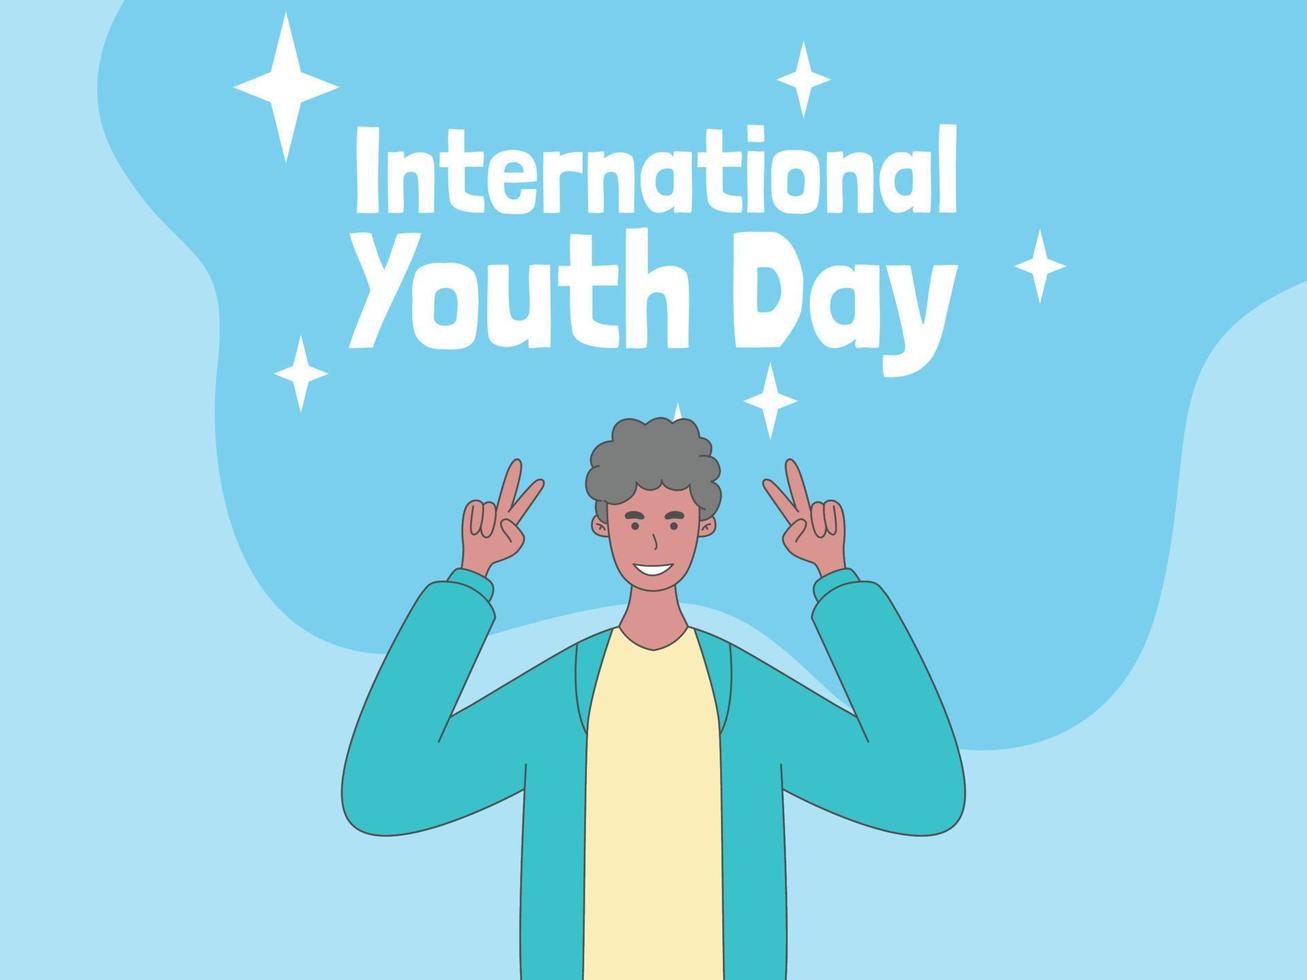 día internacional de la juventud, banner de fondo de ilustración de juventud feliz vector